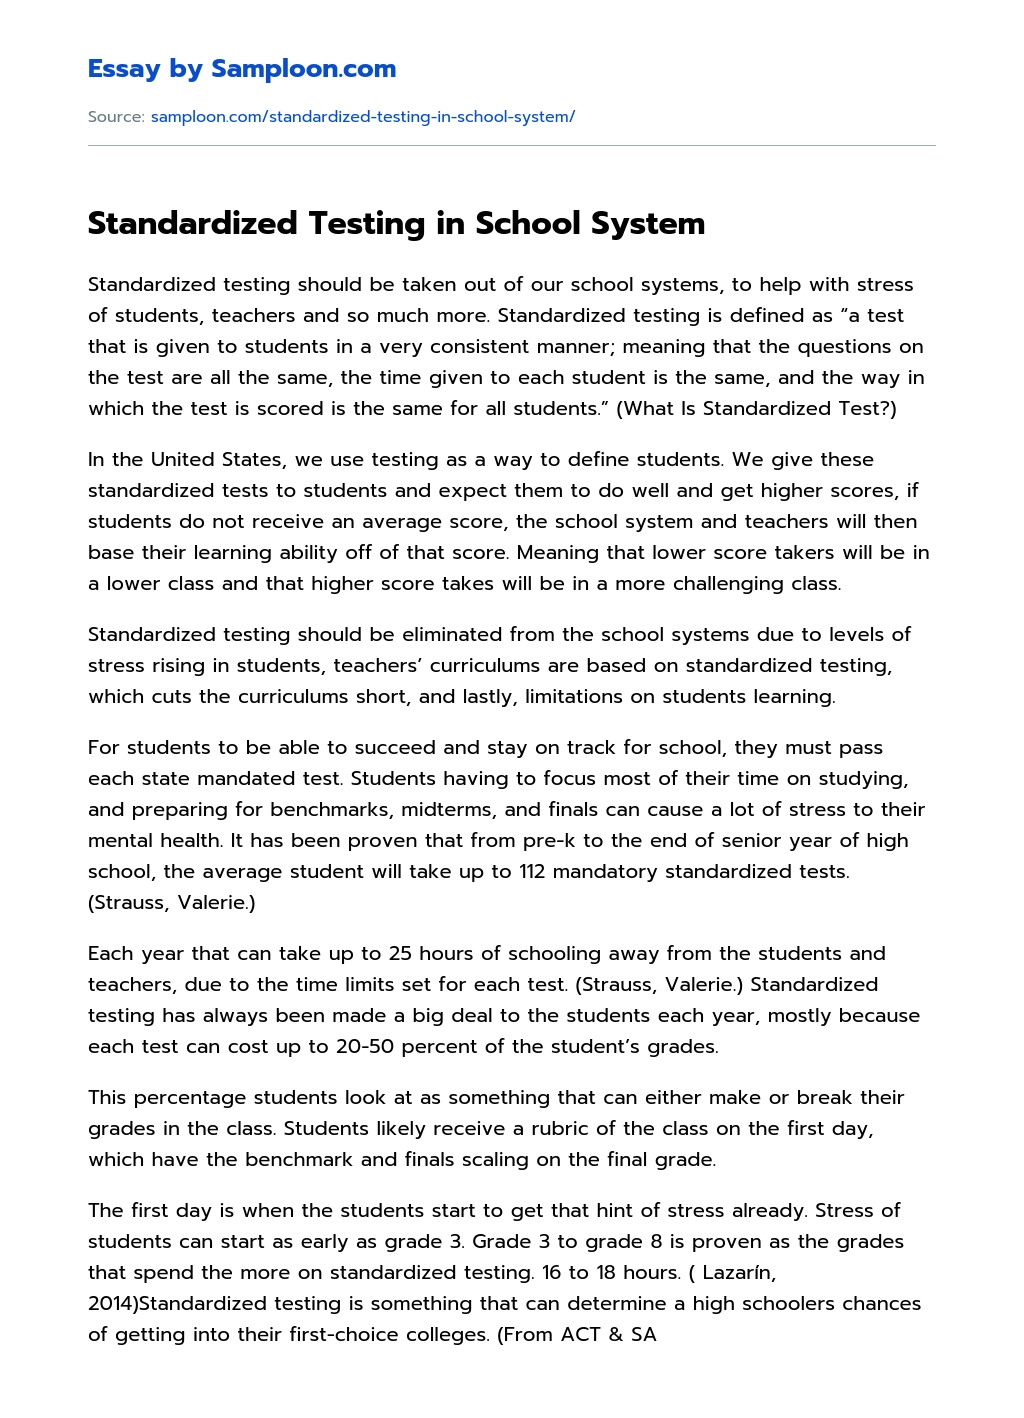 Standardized Testing in School System Argumentative Essay essay